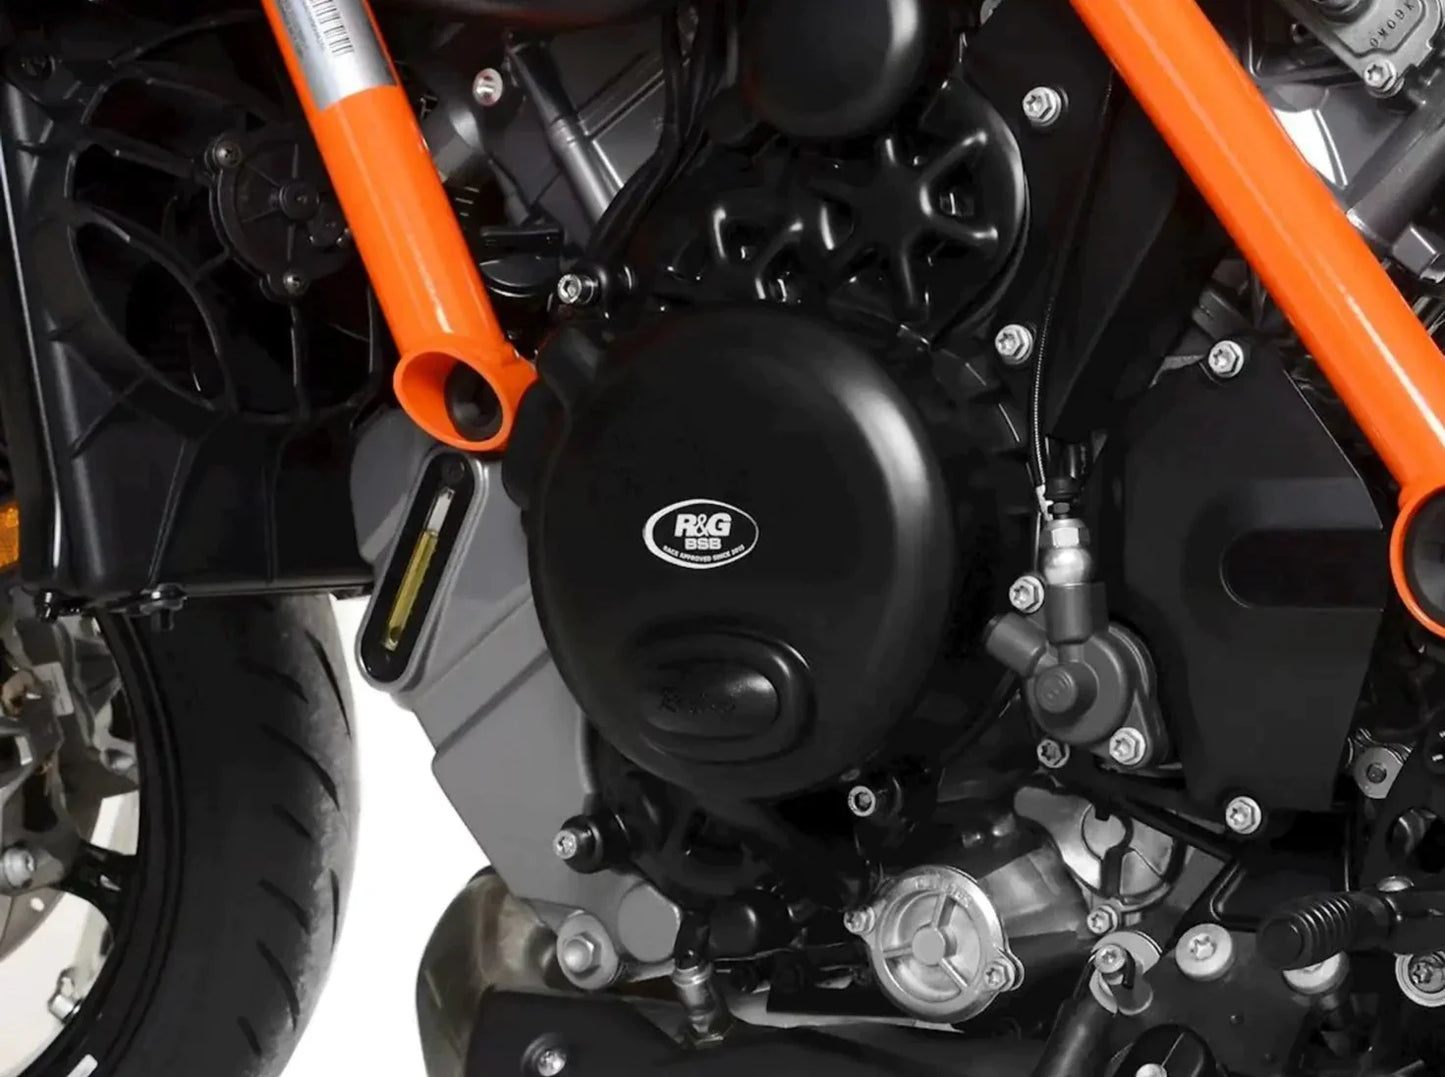 ECC0330 - R&G RACING KTM 1290 Super Duke R / RR (2020+) Alternator Cover Protection (left side)